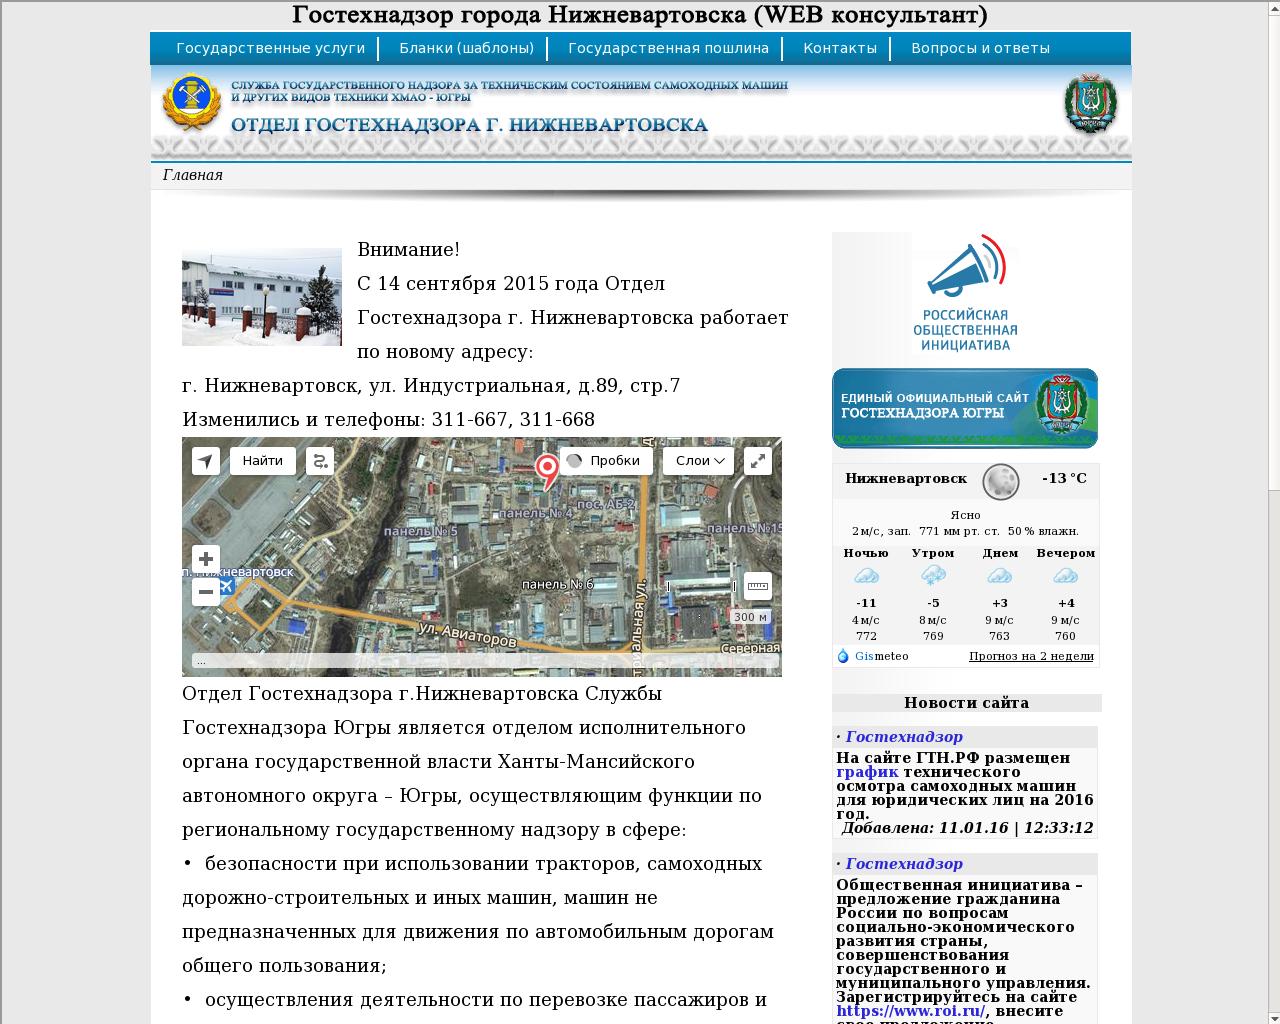 Сайт гостехнадзора московской области